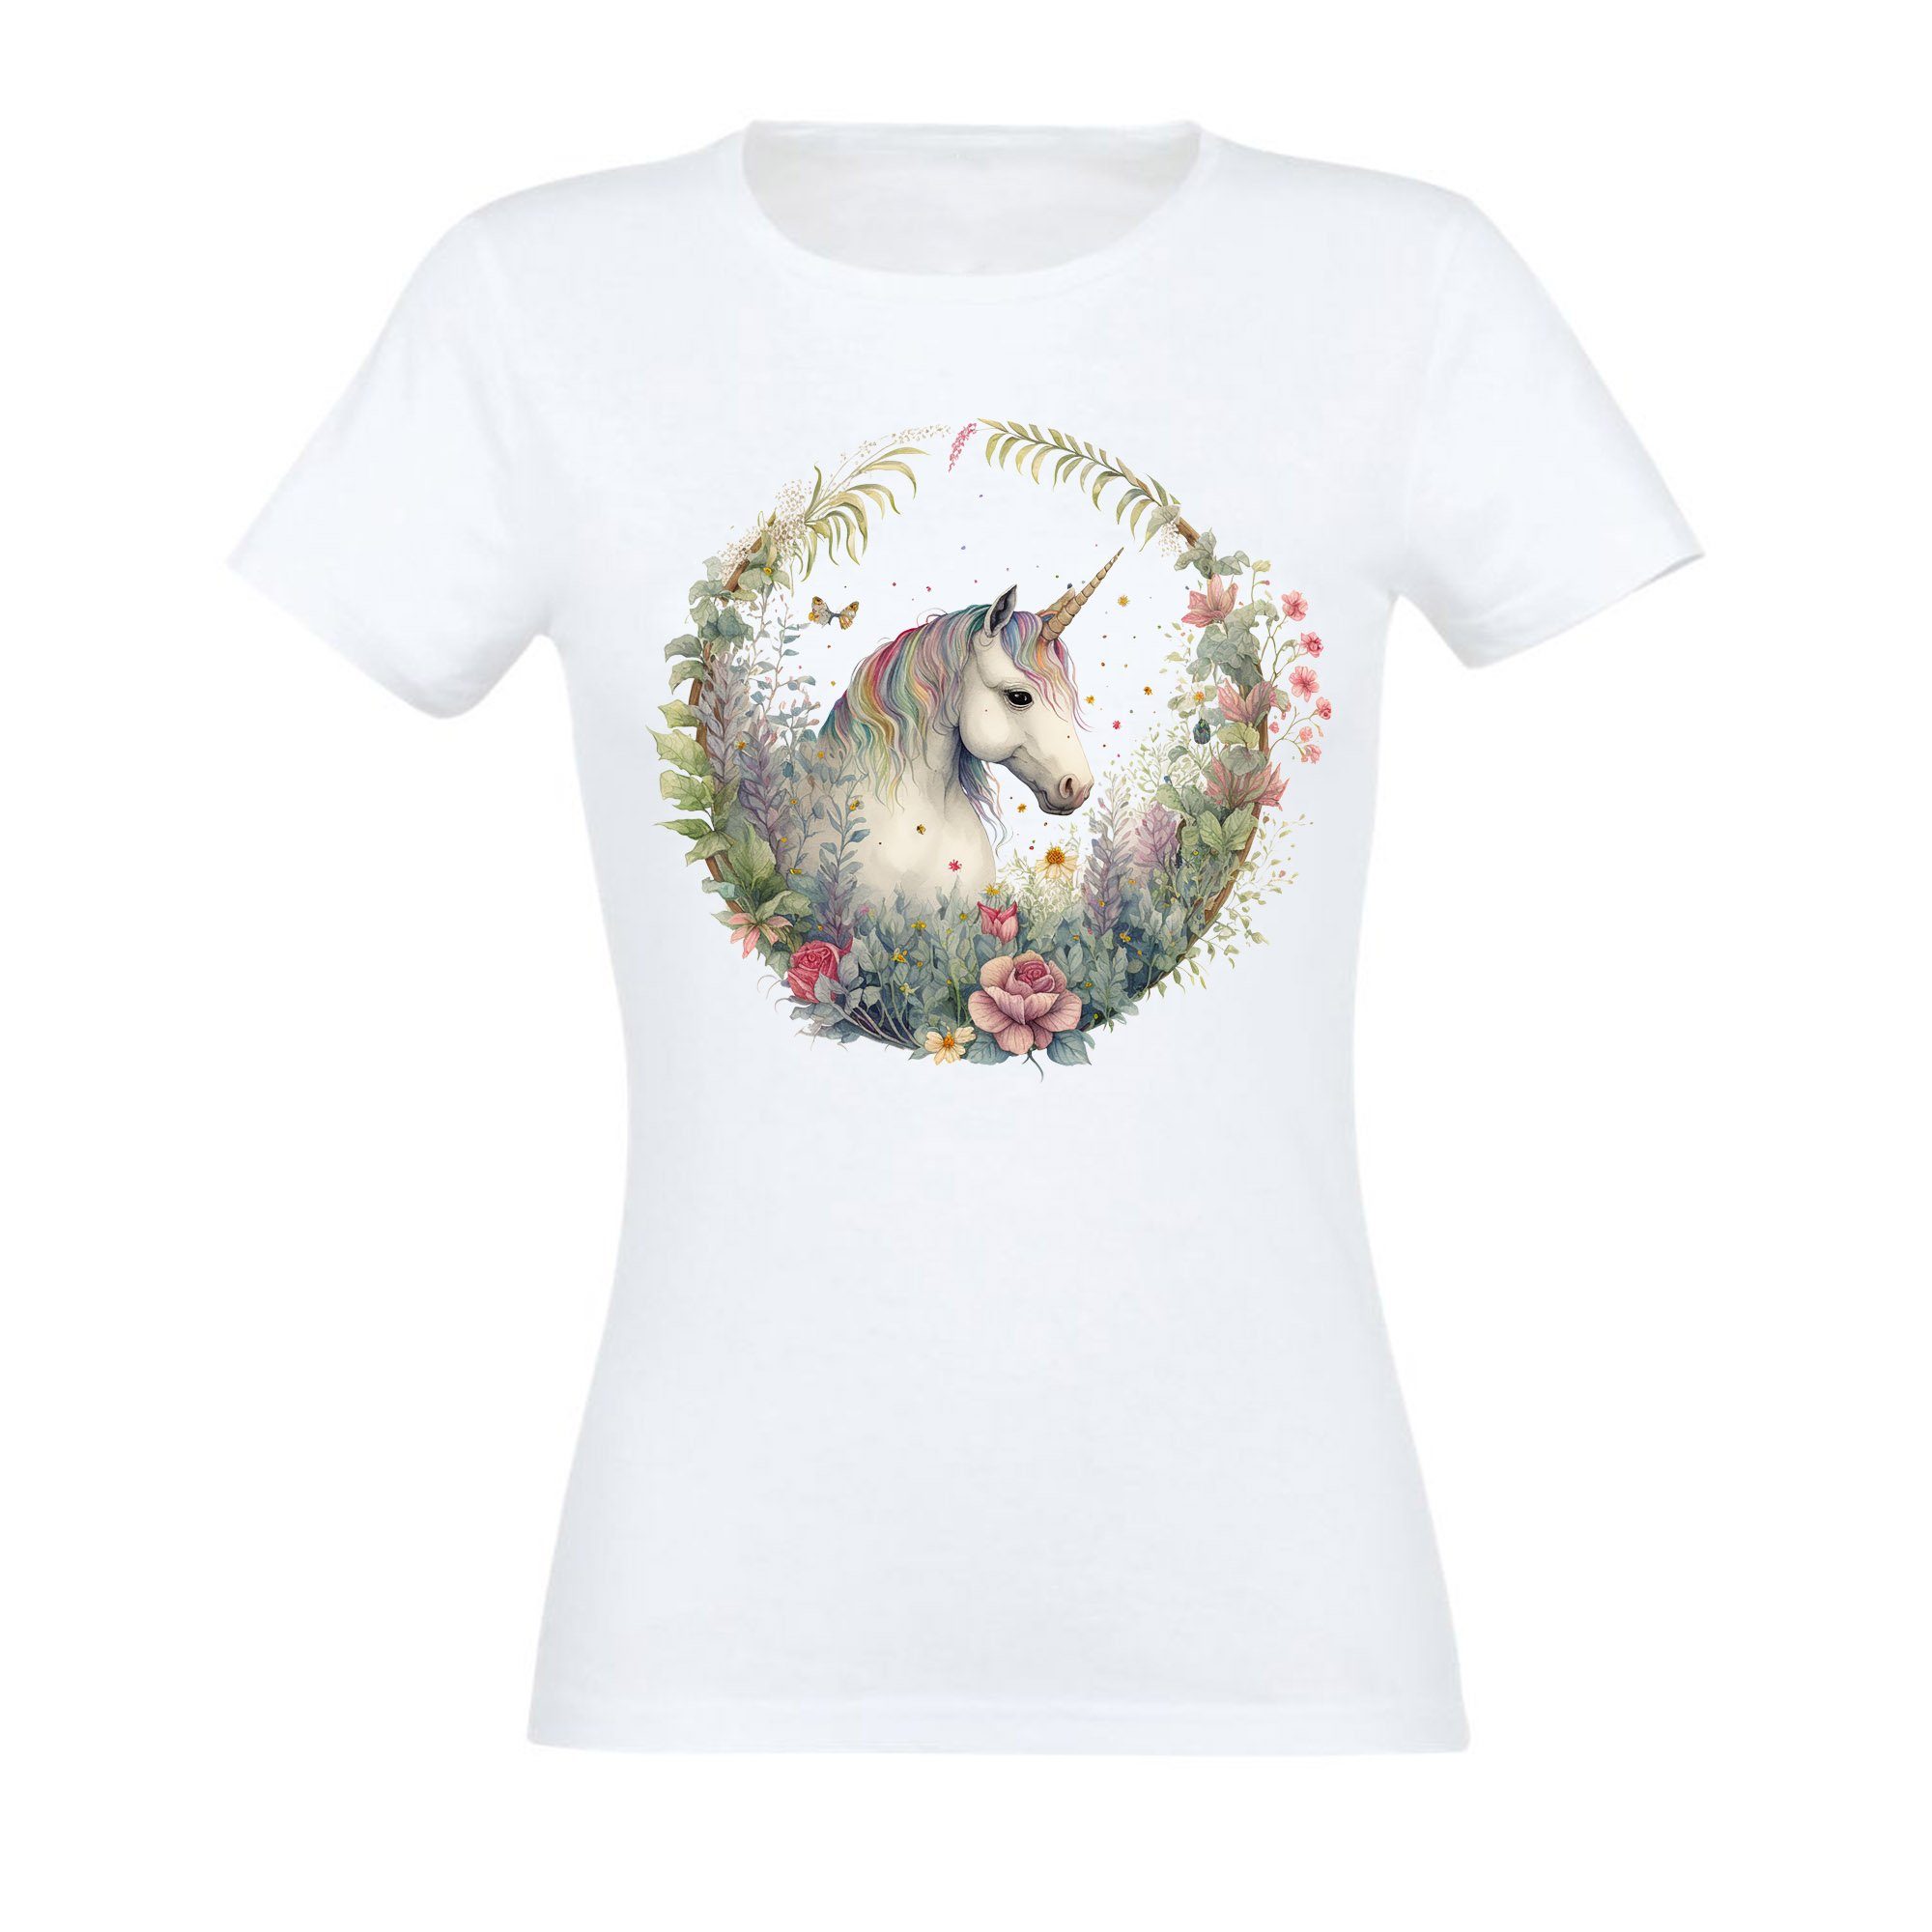 Banco T-Shirt Banco Unicorn T-Shirt mit Unicorn im Kranz Druck Damen Sommermode Weiß